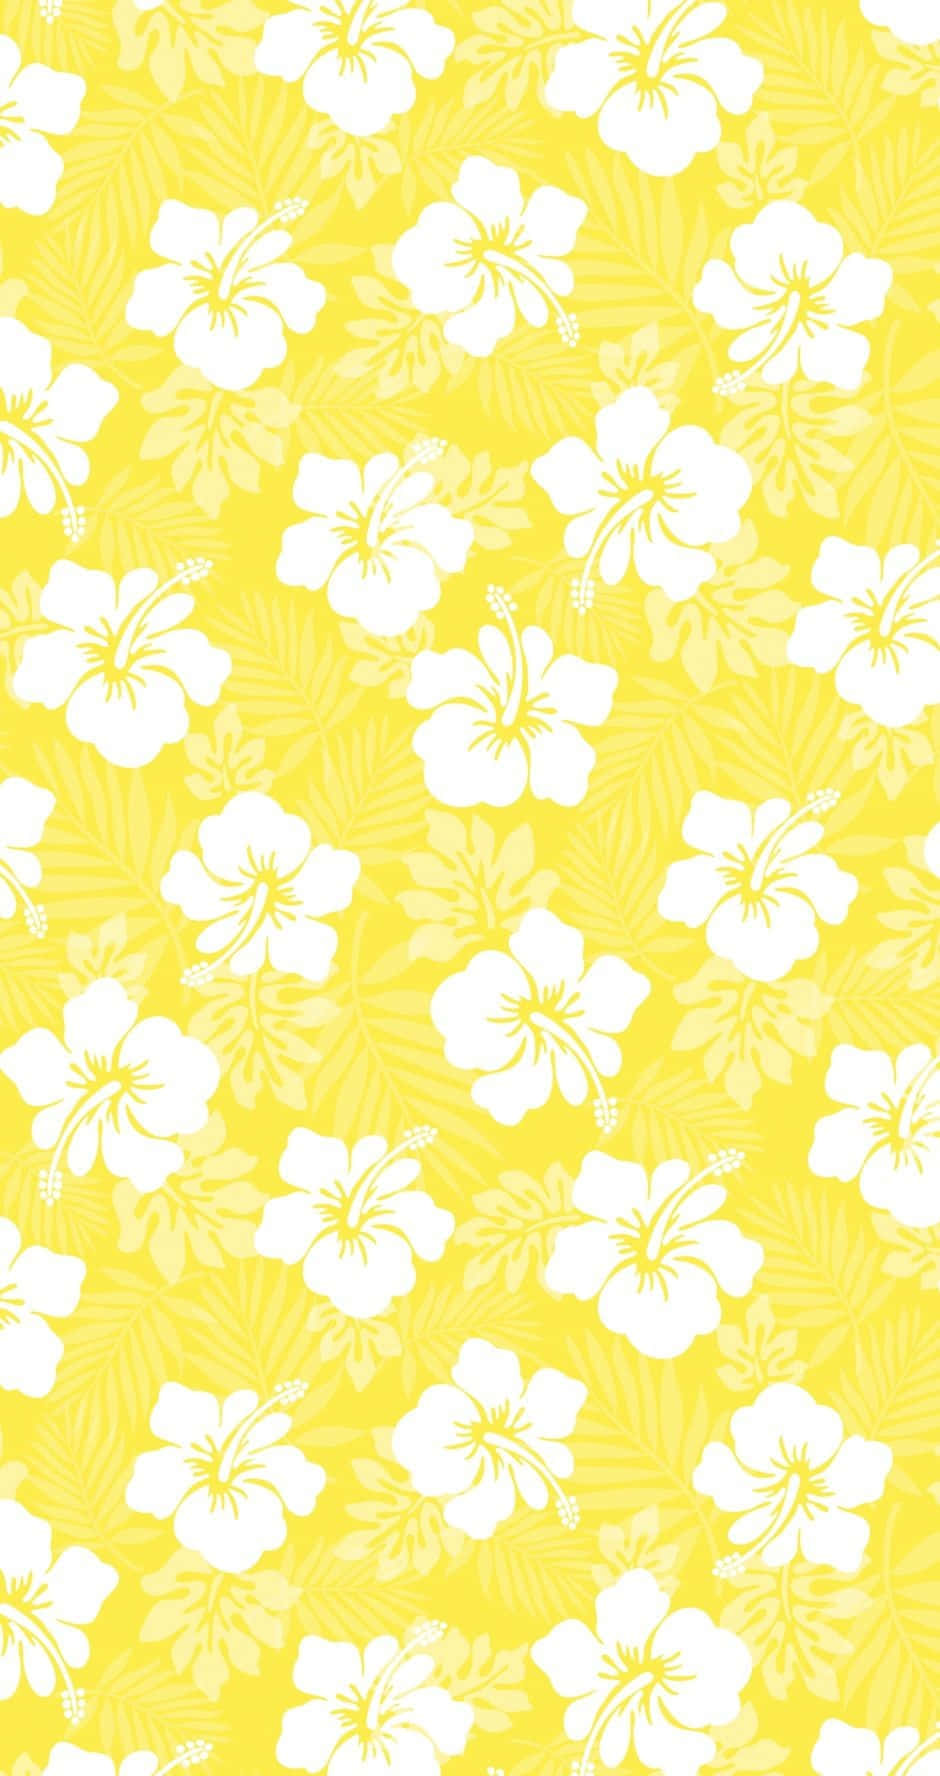 Preppy Summer Floral Pattern.jpg Wallpaper